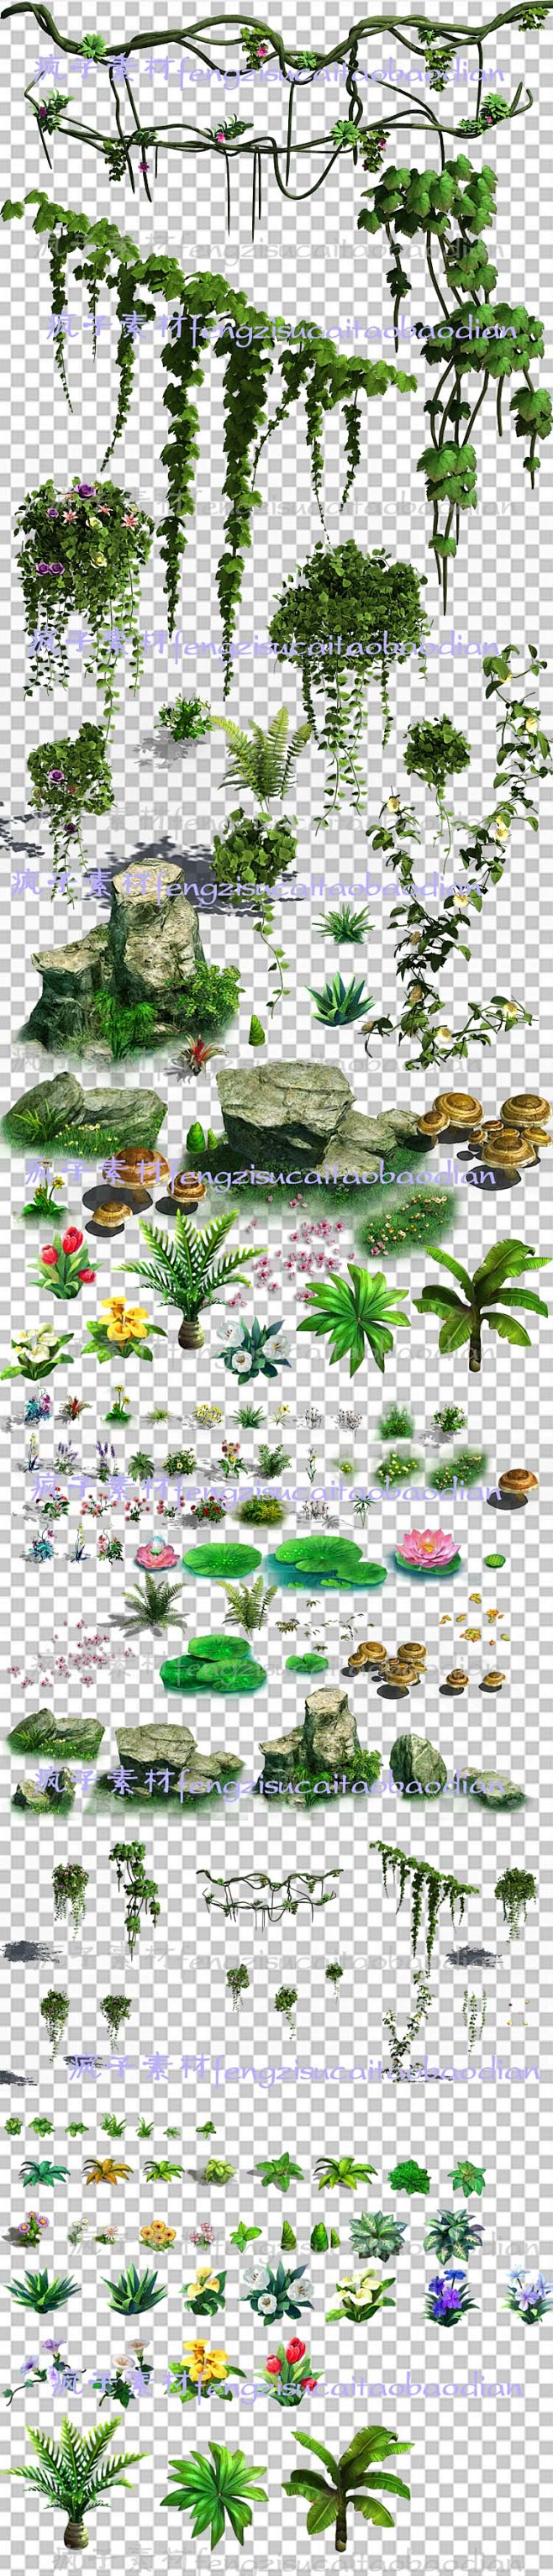 游戏美术资源手绘横版植物花草树木psd分层素材高清2d场景修图淘宝网